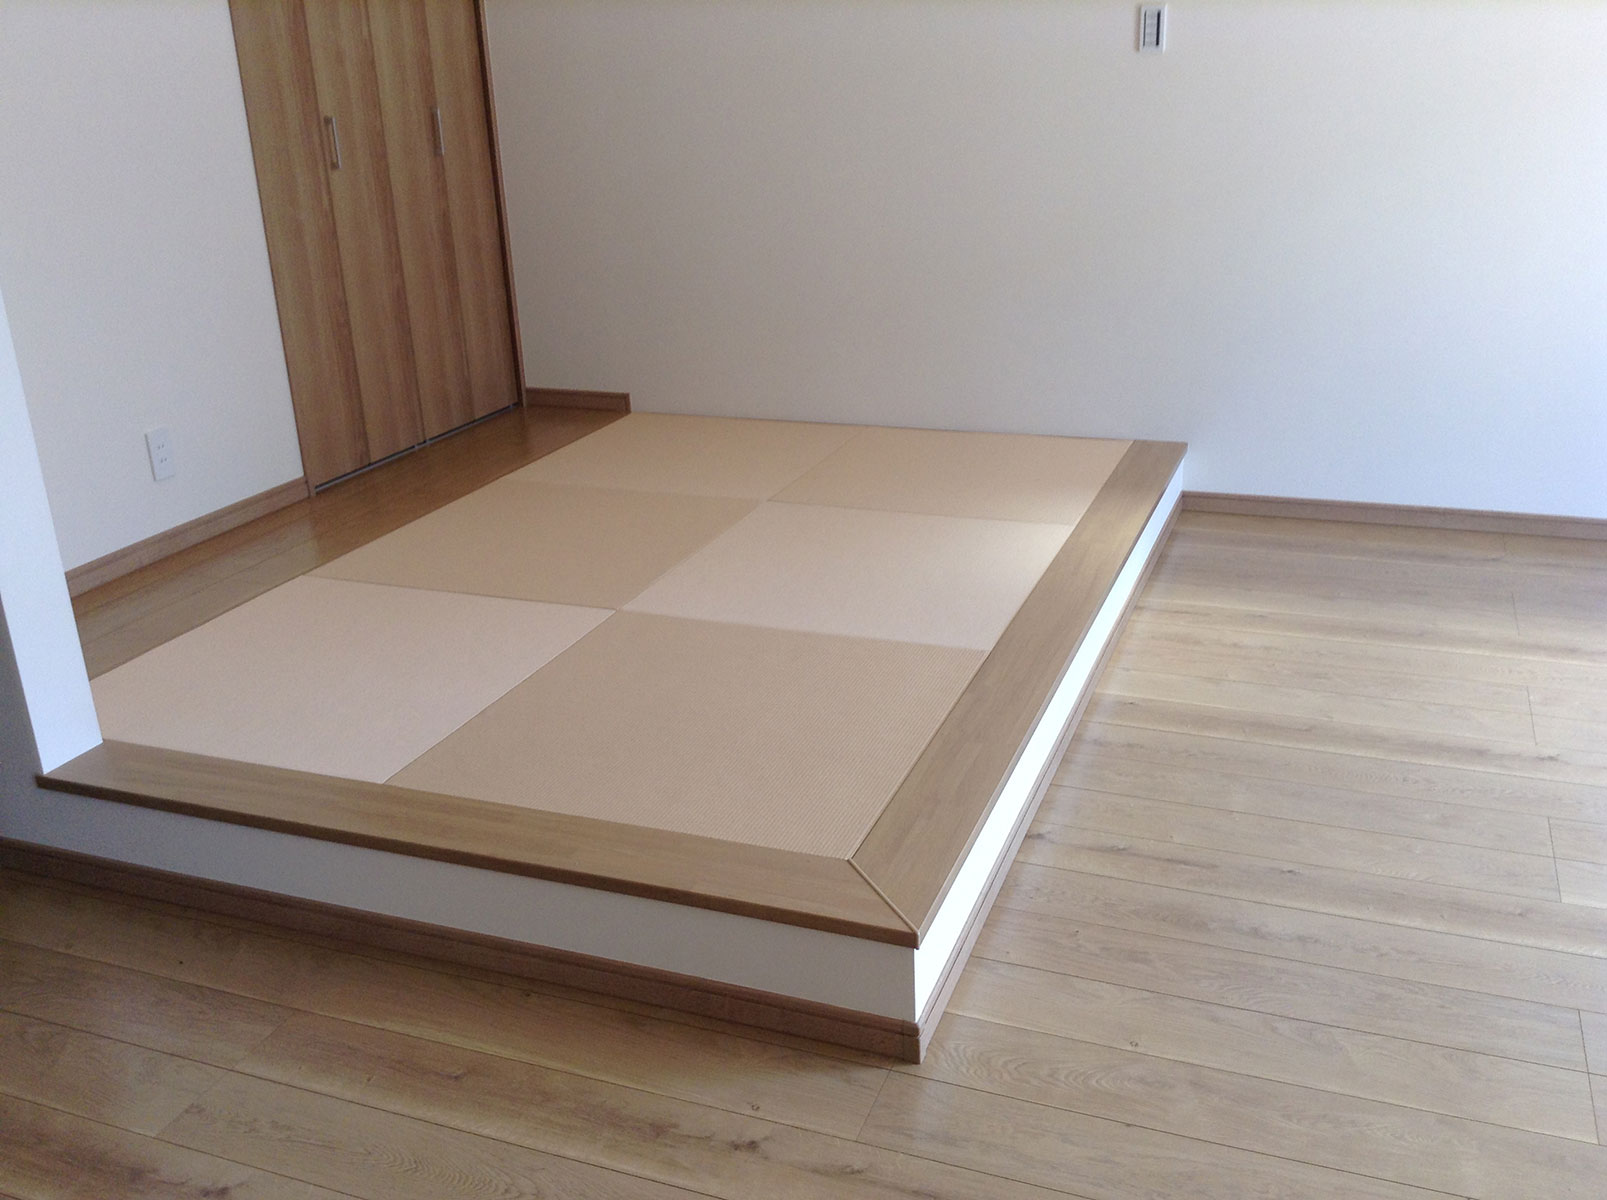 raised tatami-floored seating area